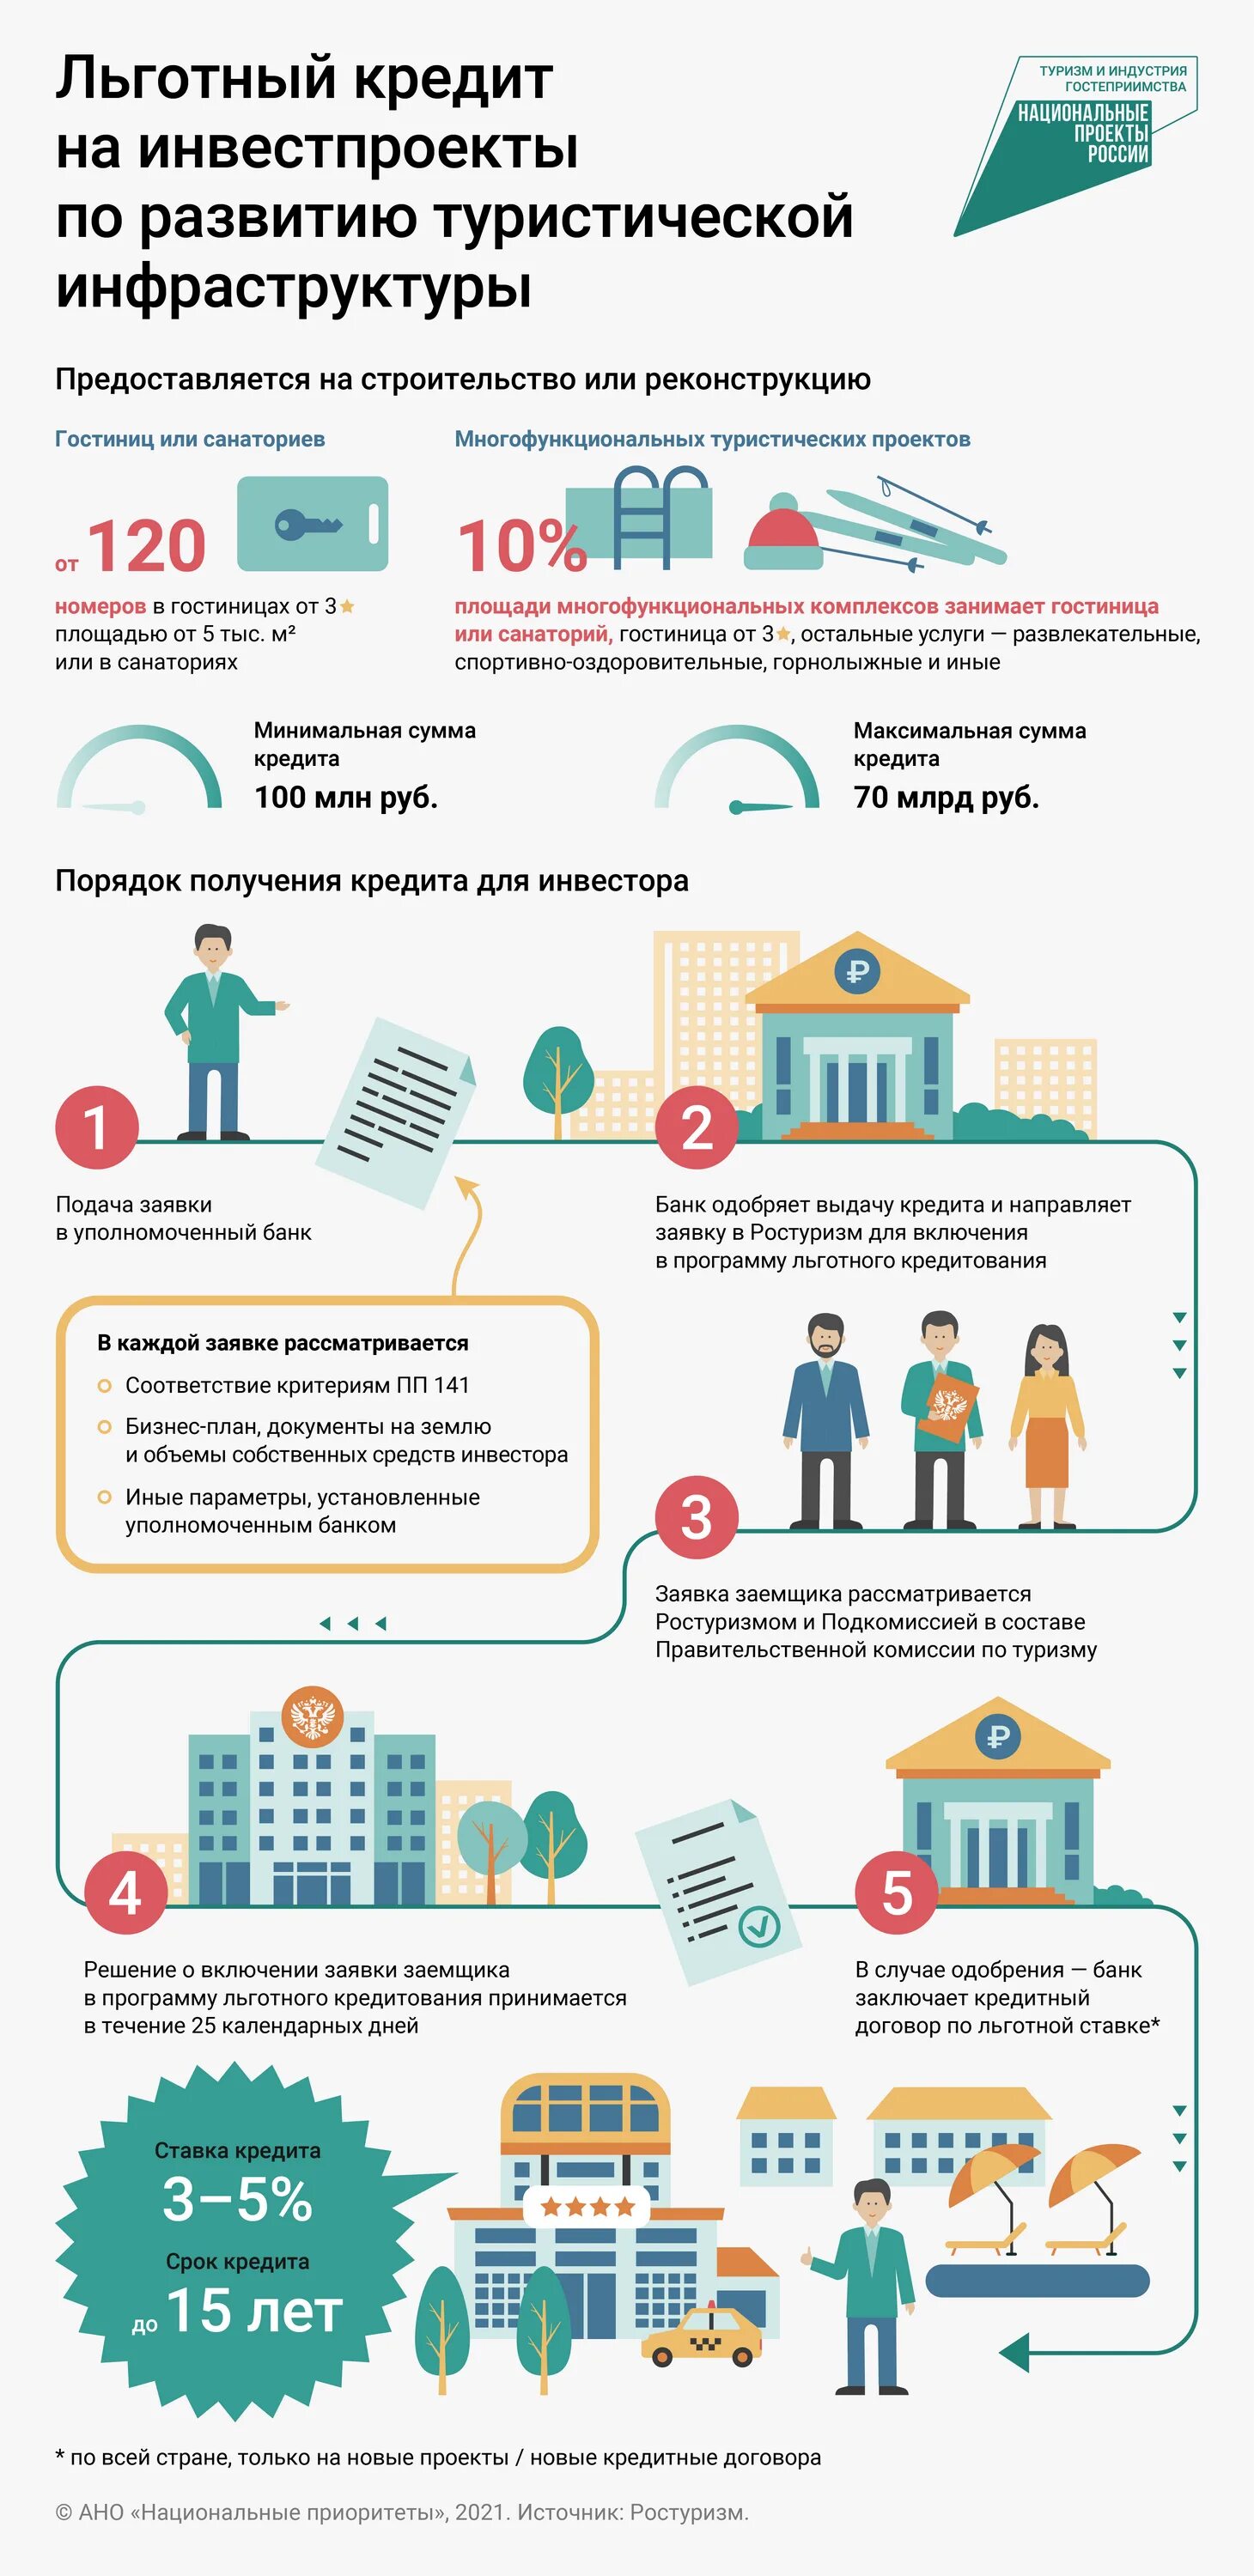 Tourism gov ru. Льготные кредиты. Программа льготного кредитования. Льготные кредиты для бизнеса. Льготные кредиты для малого бизнеса.